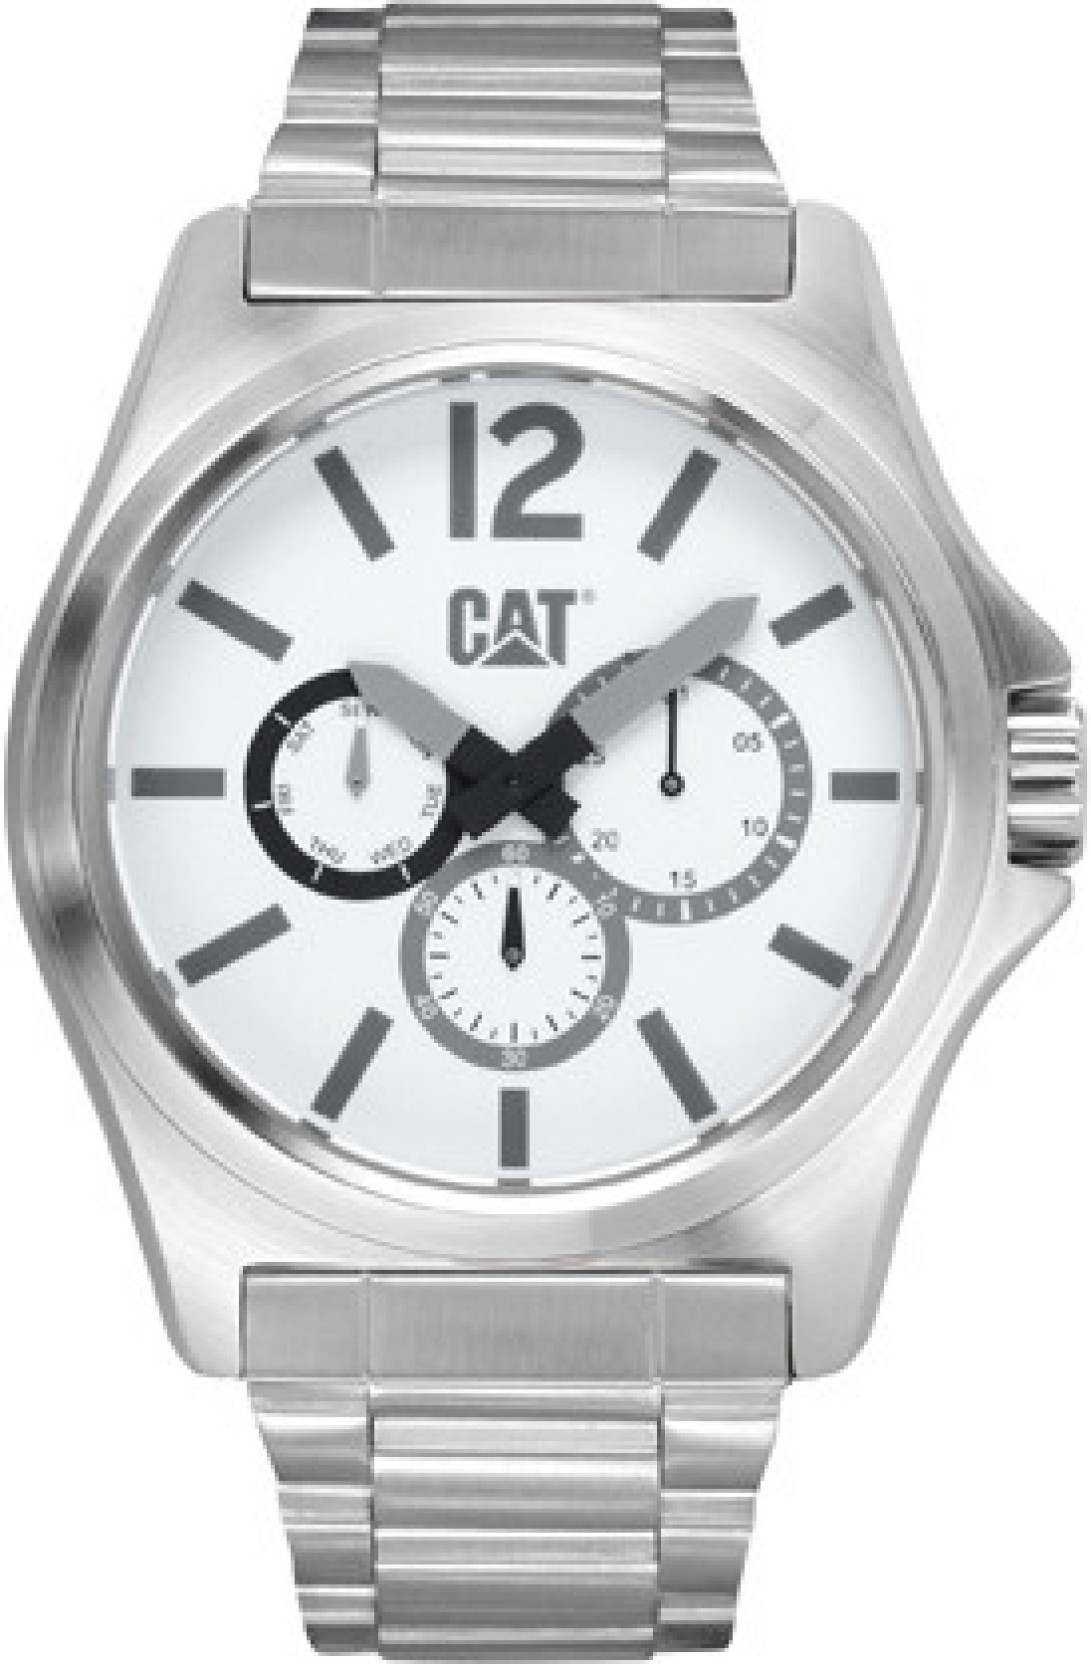 149.11.232 DP XL Analog Watch - For Men - Buy CAT PK.149.11.232 DP XL 